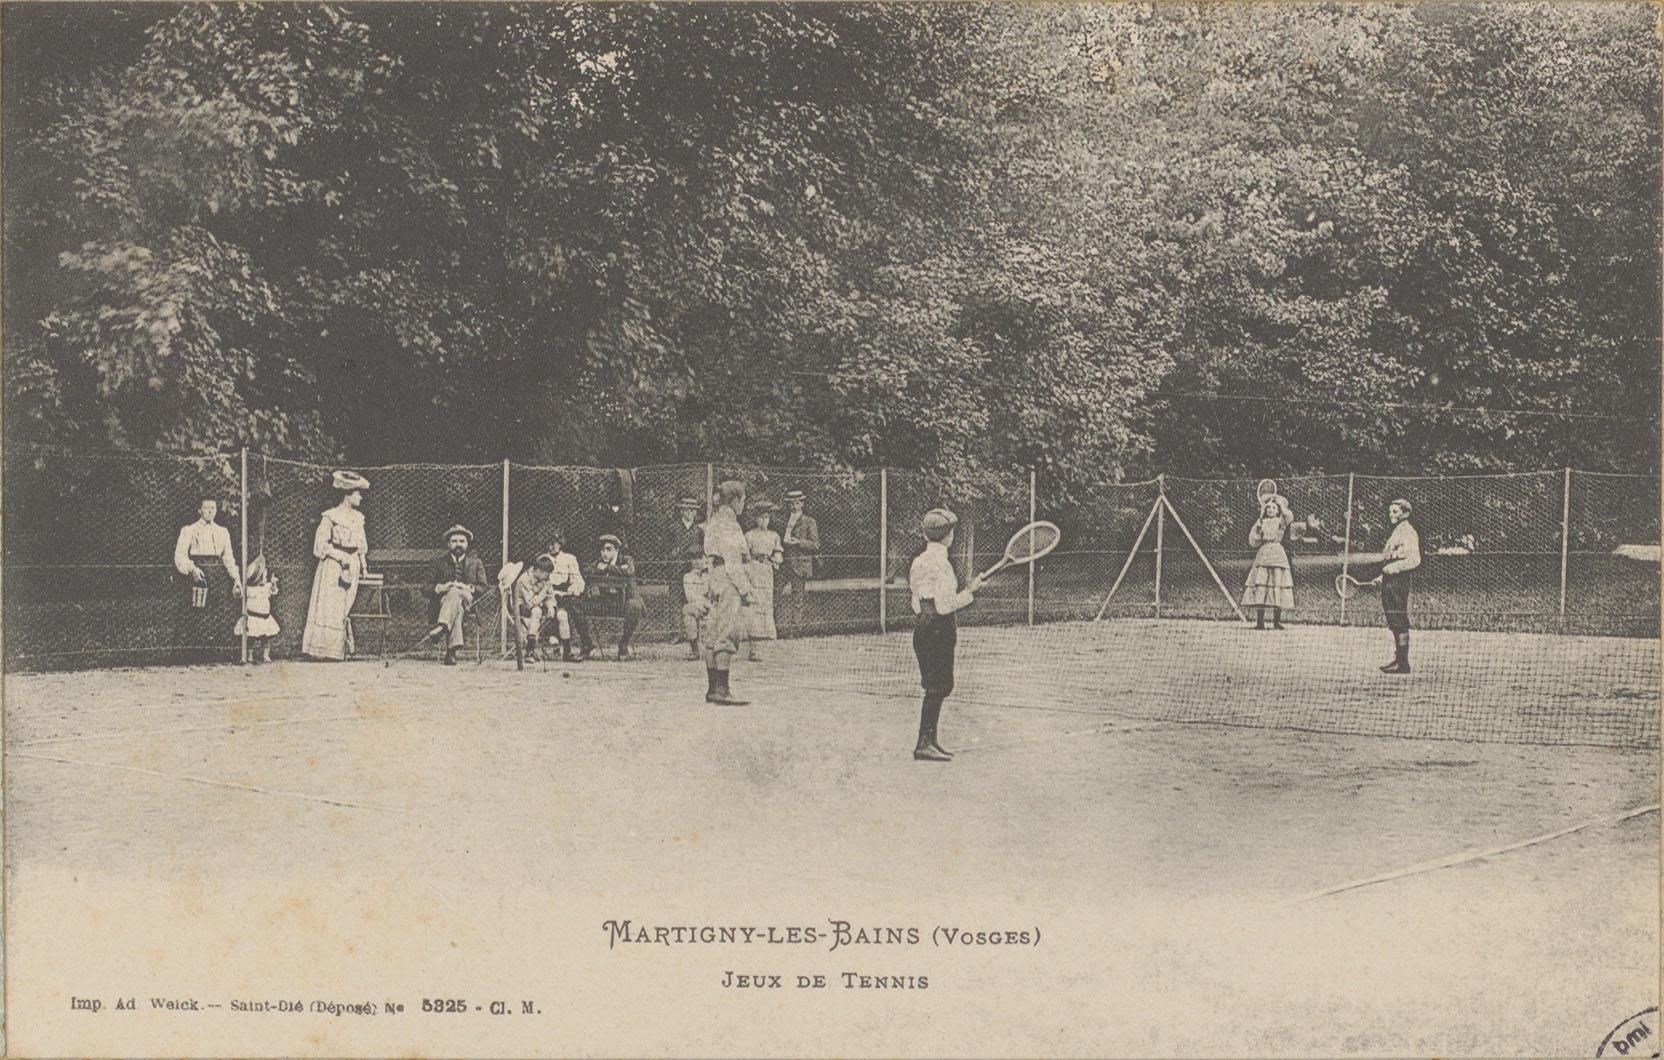 Contenu du Martigny-les-Bains (Vosges), Jeux de tennis